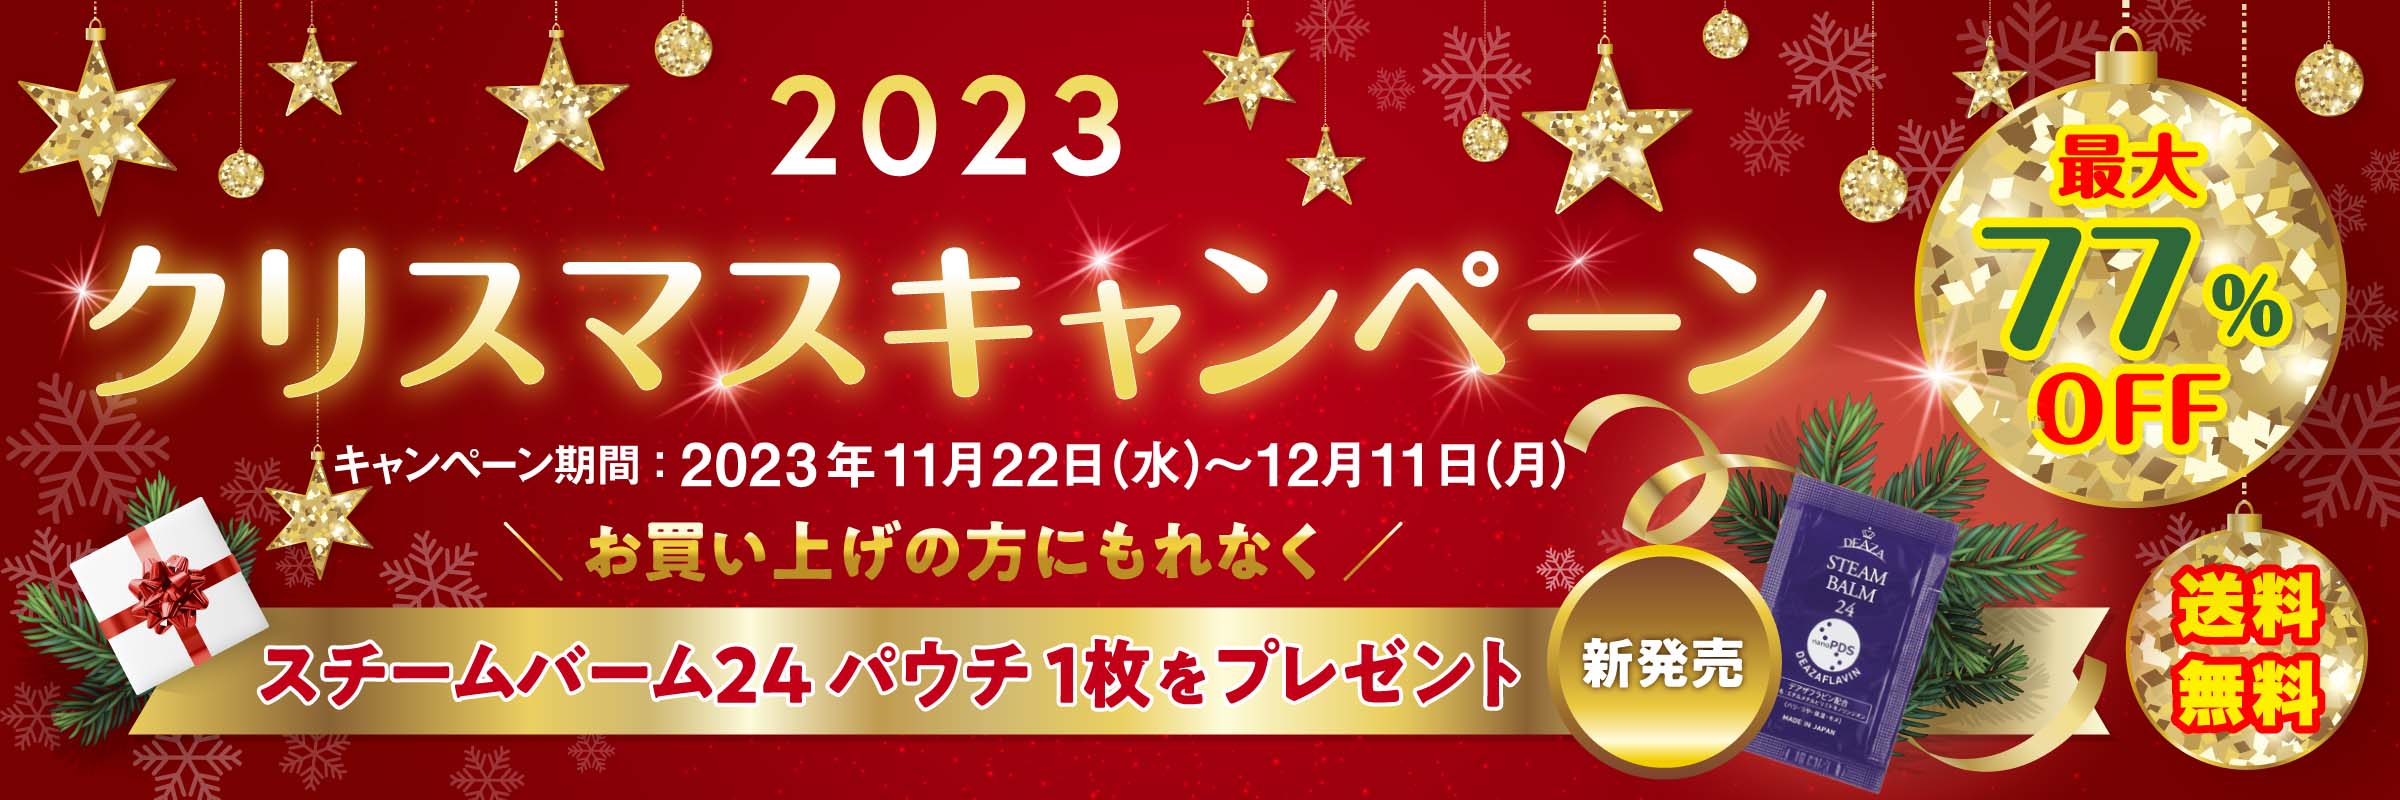 2023年クリスマスキャンペーン